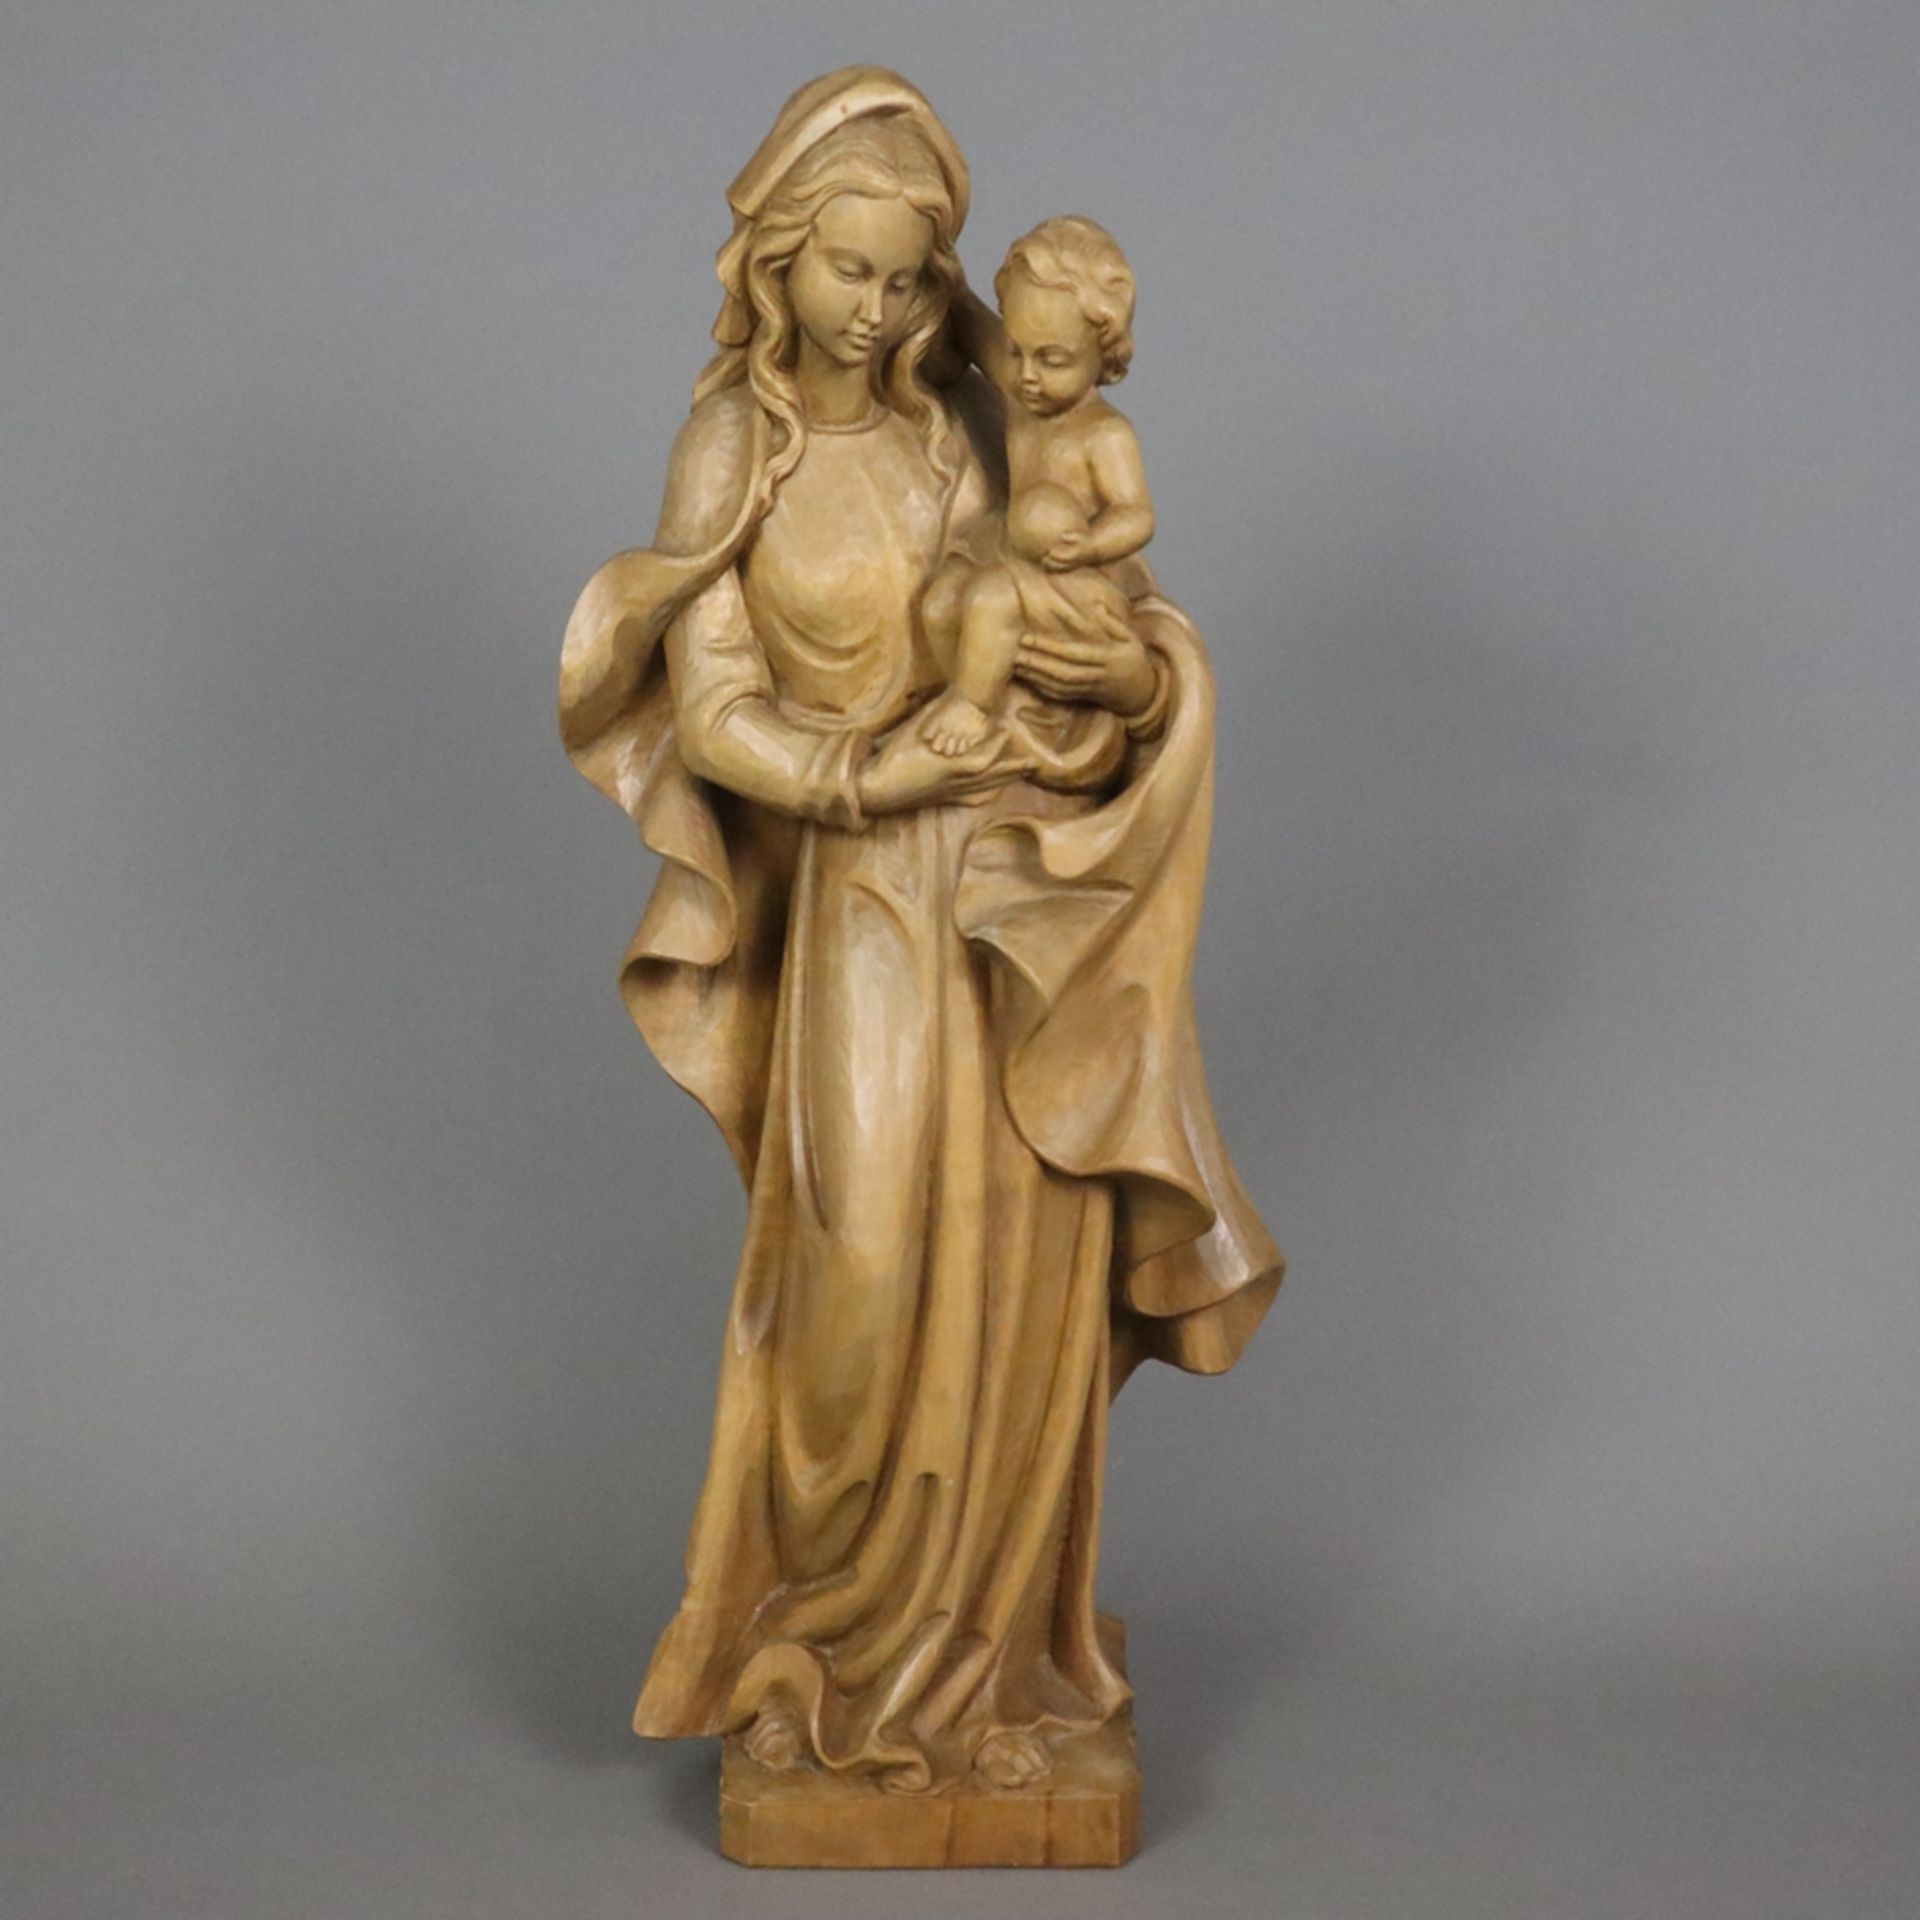 Holzfigur Madonna mit Kind - 20. Jahrhundert, Lindenholz, vollrund geschnitzt, Darstellung von Mari